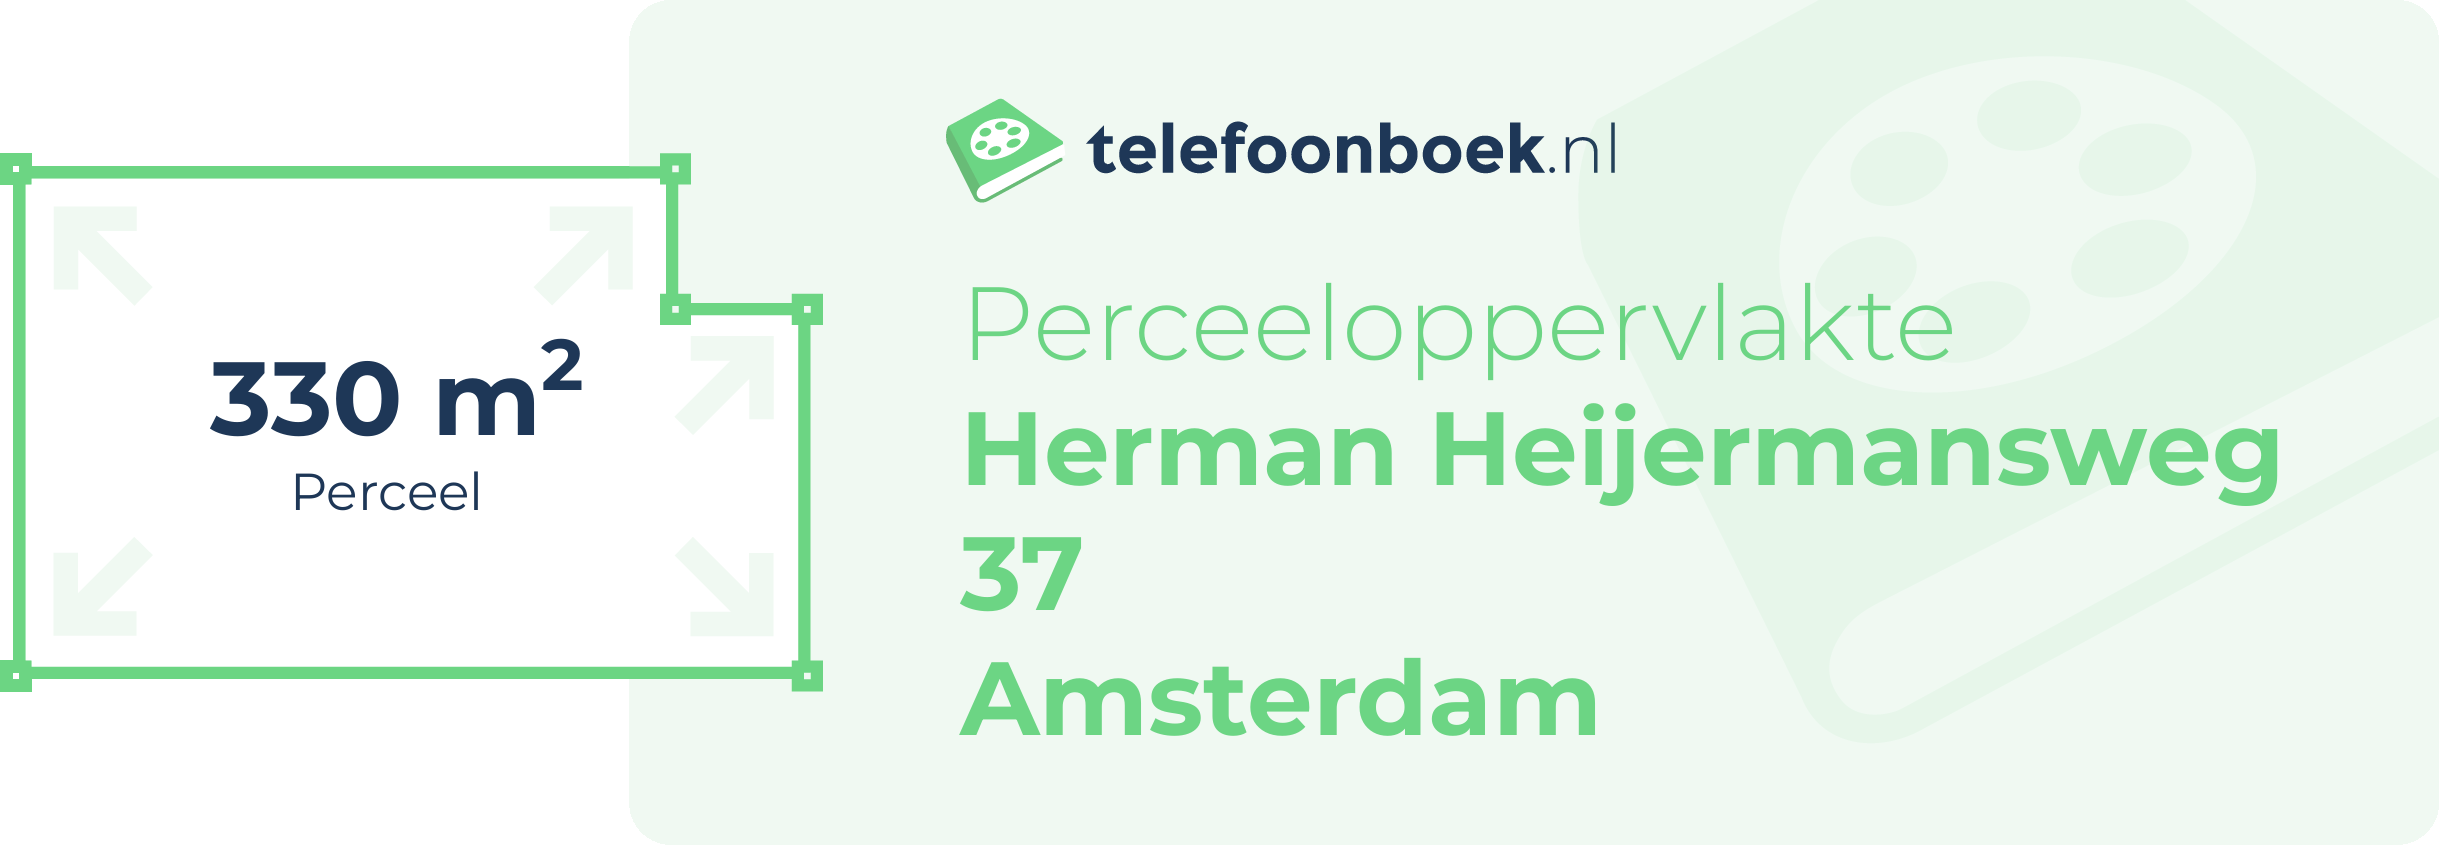 Perceeloppervlakte Herman Heijermansweg 37 Amsterdam